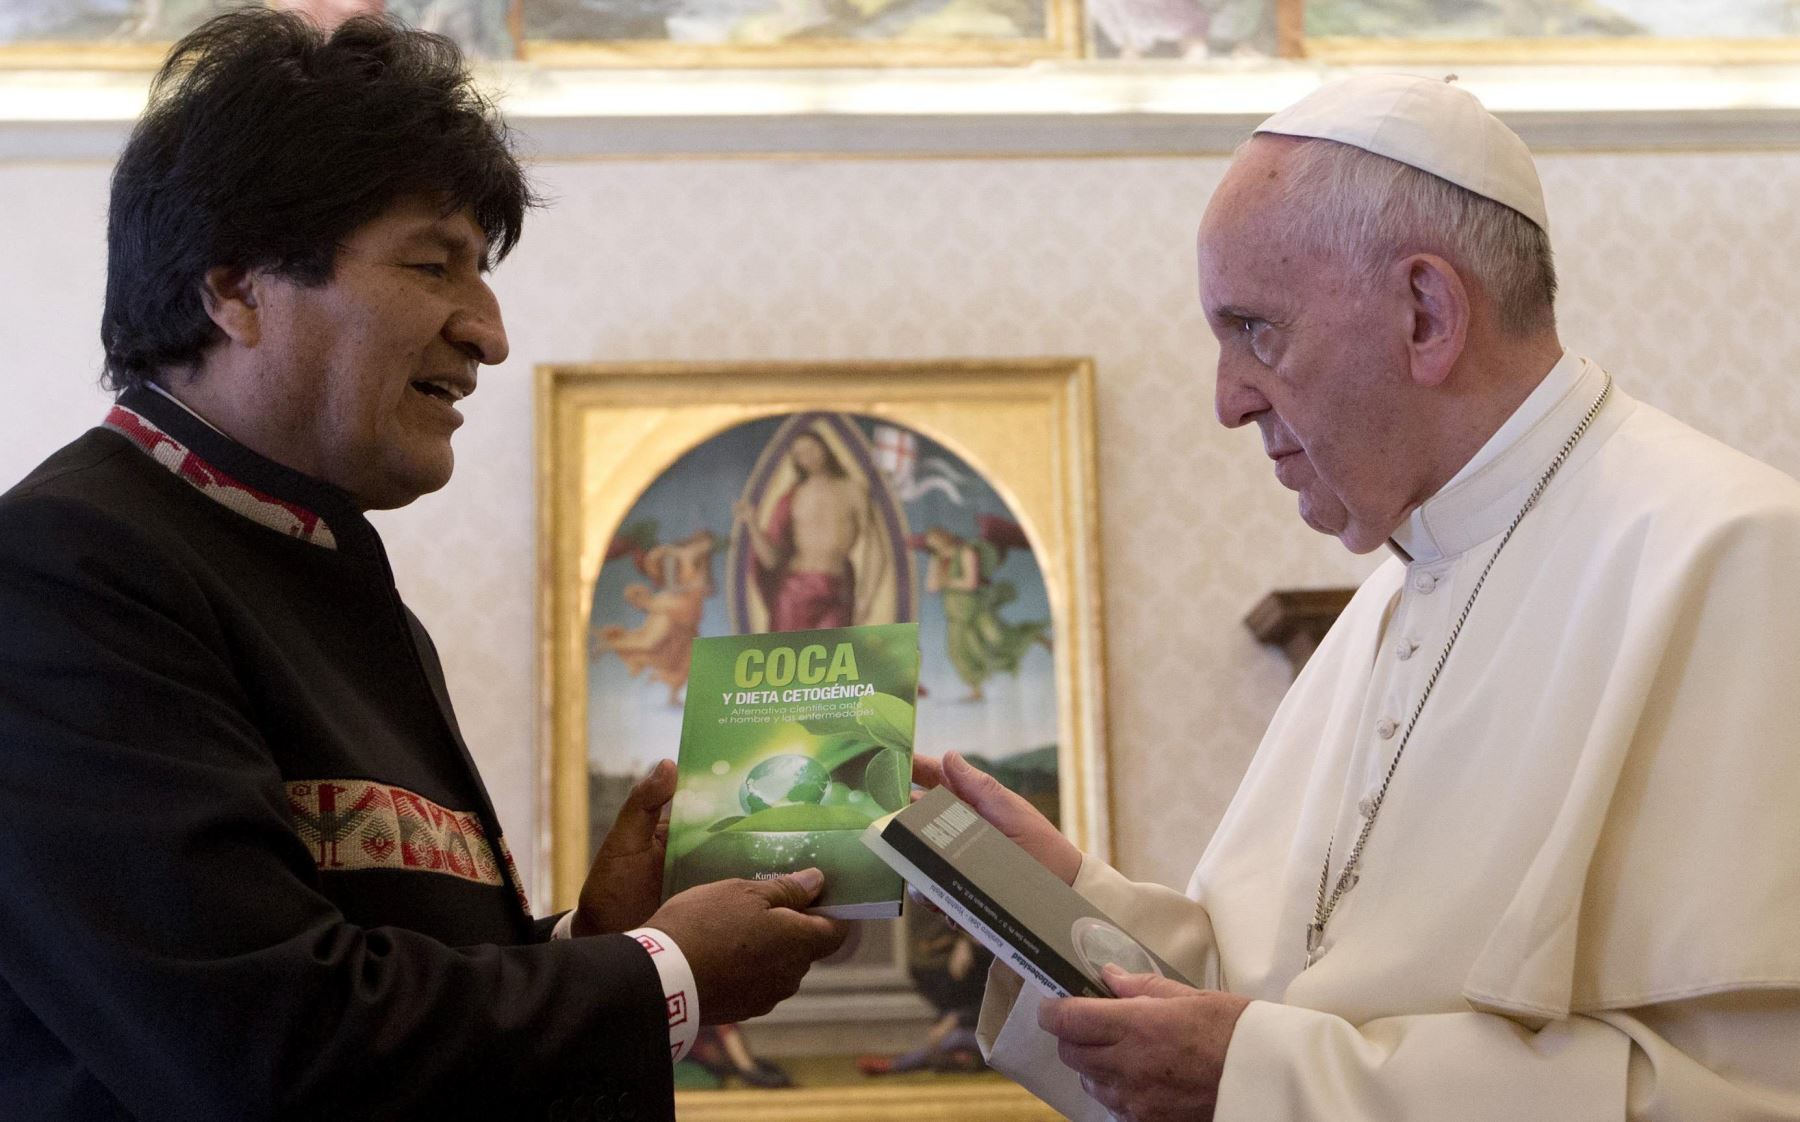  Evo Morales le recomienda al Papa Francisco tomar coca